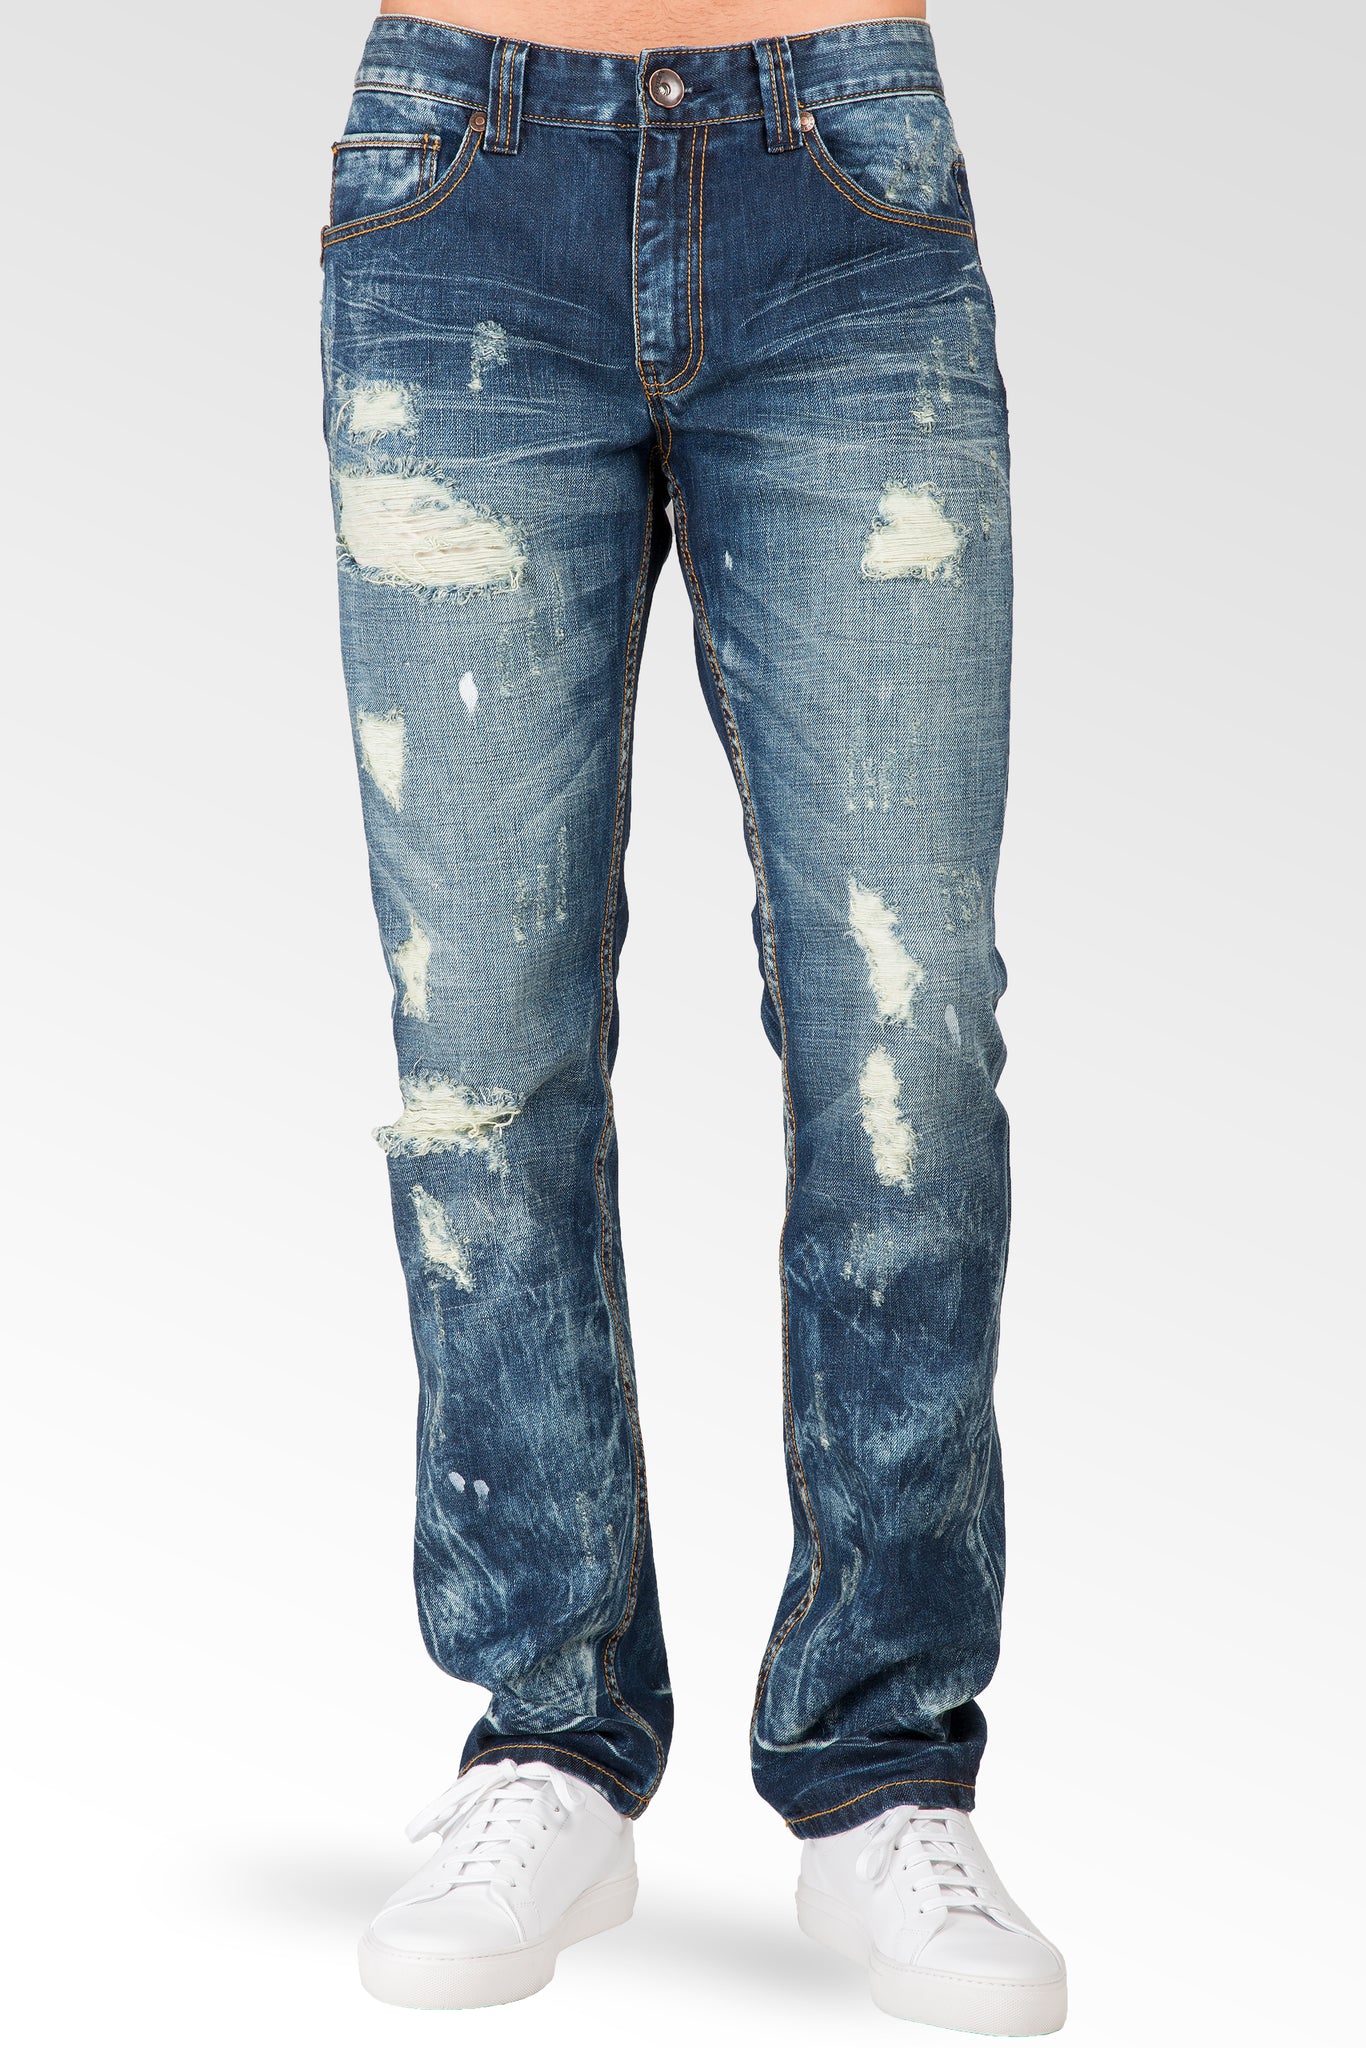 Level 7 Men's Slim Straight Destroyed Bleach Splatter Medium Blue Jeans  Premium Denim – Level 7 Jeans